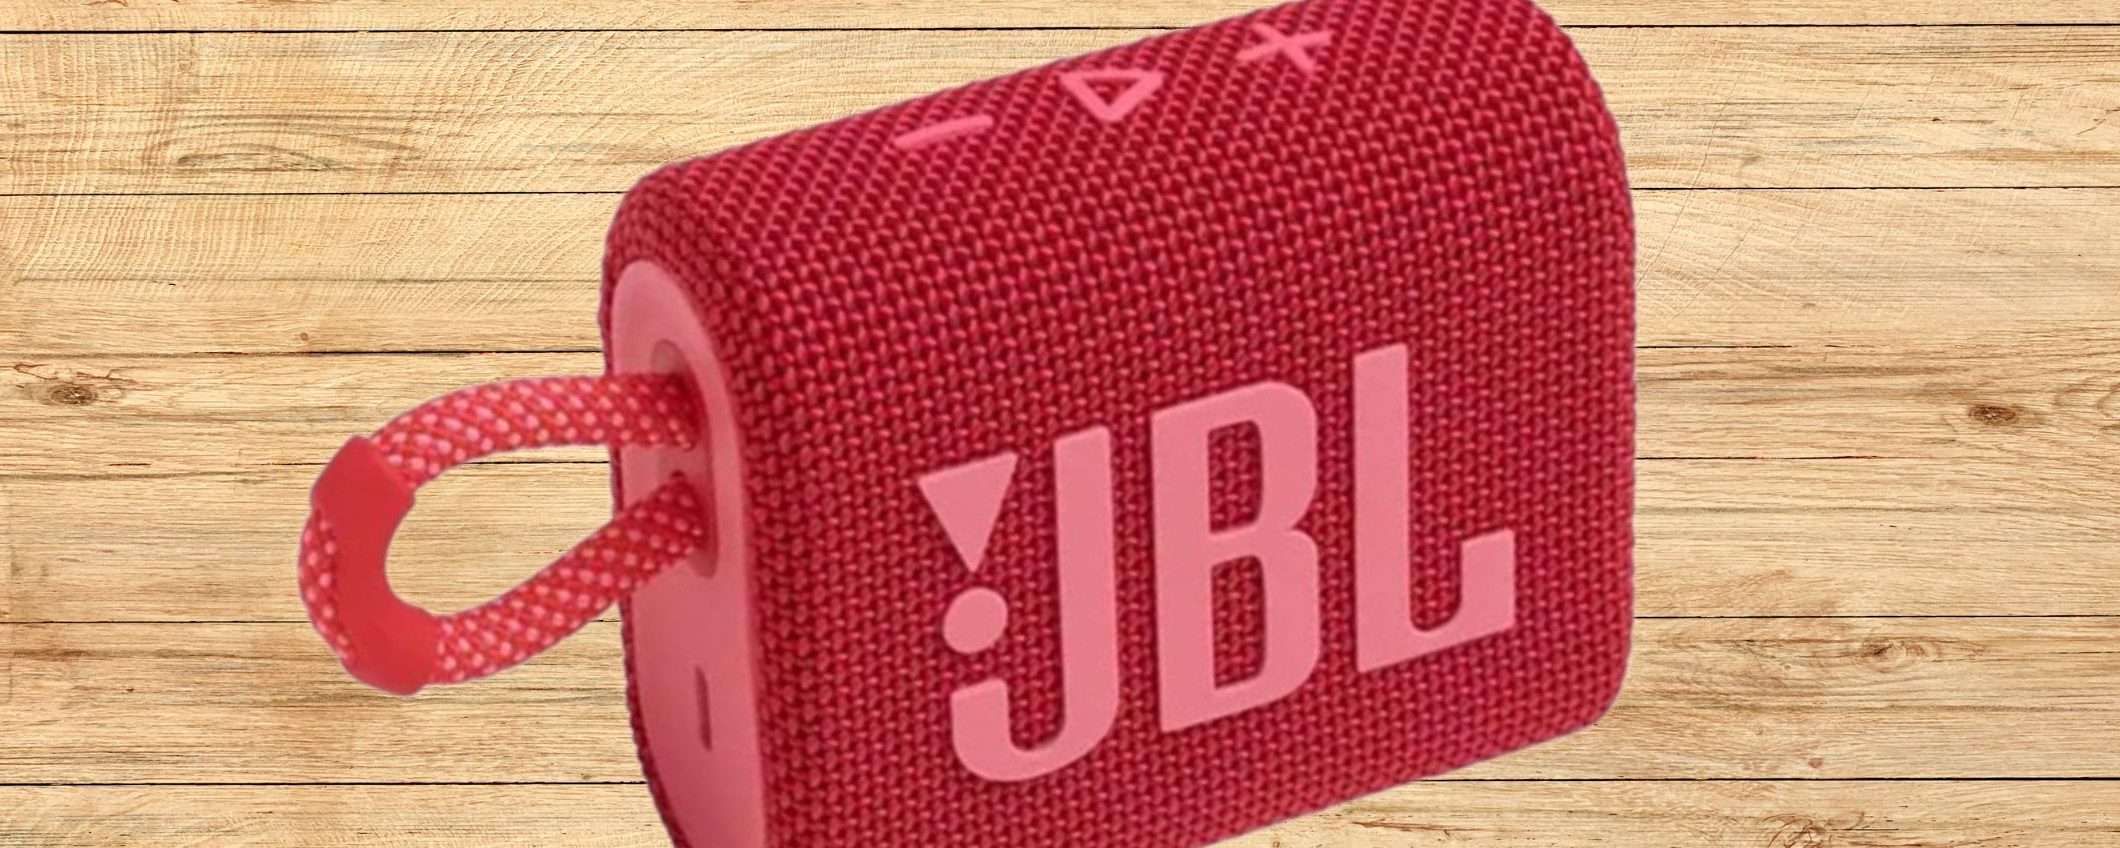 Speaker Bluetooth JBL GO 3 a soli 27€ è un AFFARONE da non perdere!